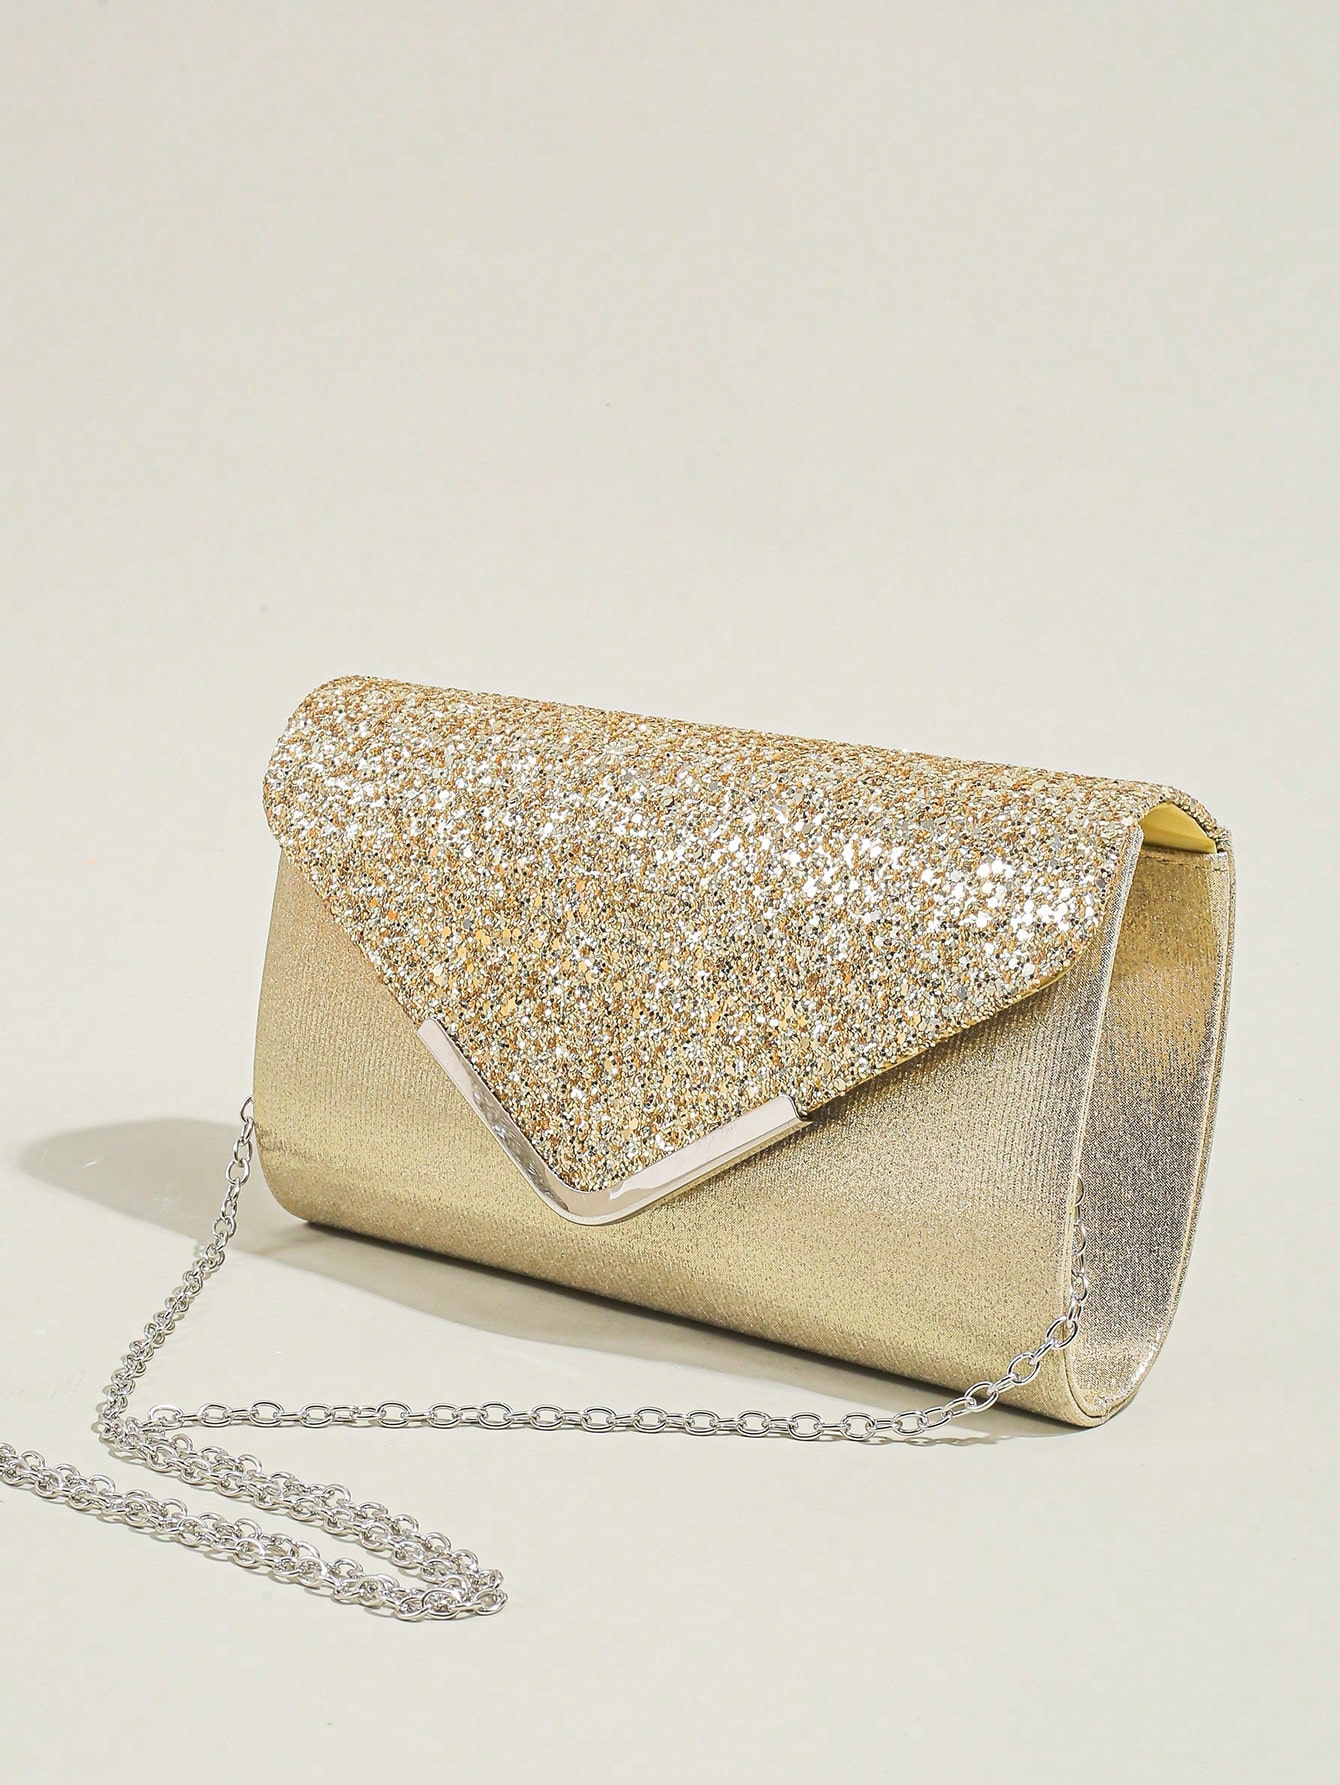 Женская вечерняя сумка-конверт, золото блестящая блестящая сумка стразы в форме облака роскошная вечерняя сумка клатч для ужина вечеринки кошелек женская сумка через плечо су